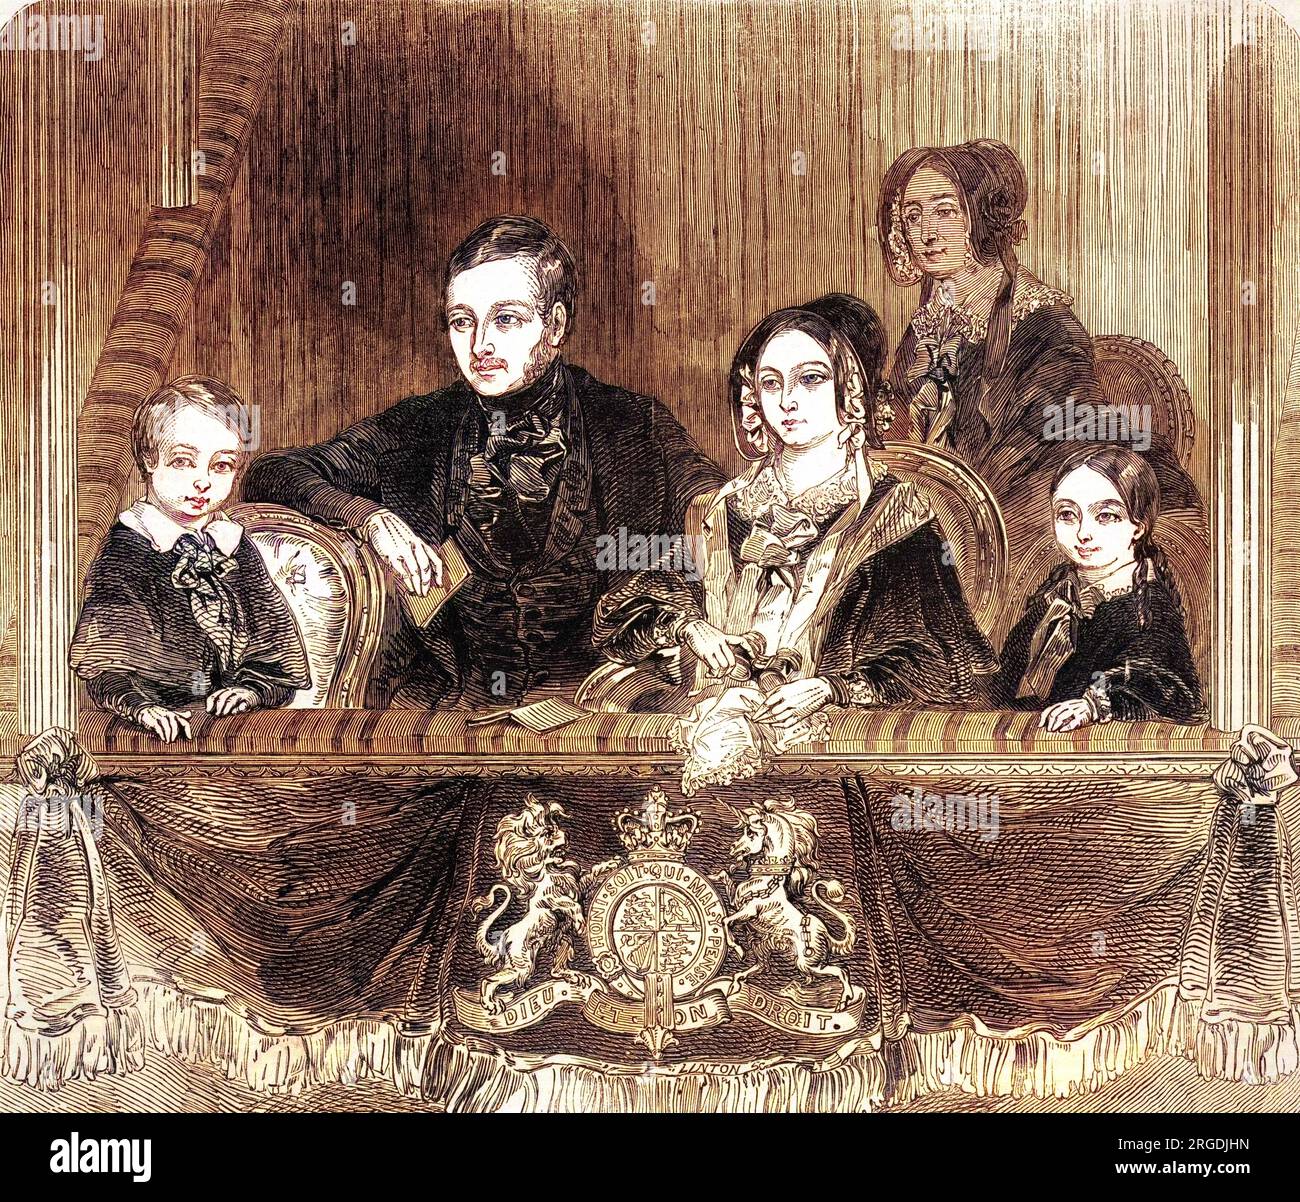 La reine Victoria (1819 - 1901), le prince Albert (1819 - 1861), et leurs deux enfants Vicky Princess Royal (1840 - 1901), plus tard impératrice allemande, et Edward Prince of Wales (1841 - 1910) (plus tard Édouard VII) profitent d'une visite à l'amphithéâtre Astley, Londres. Banque D'Images